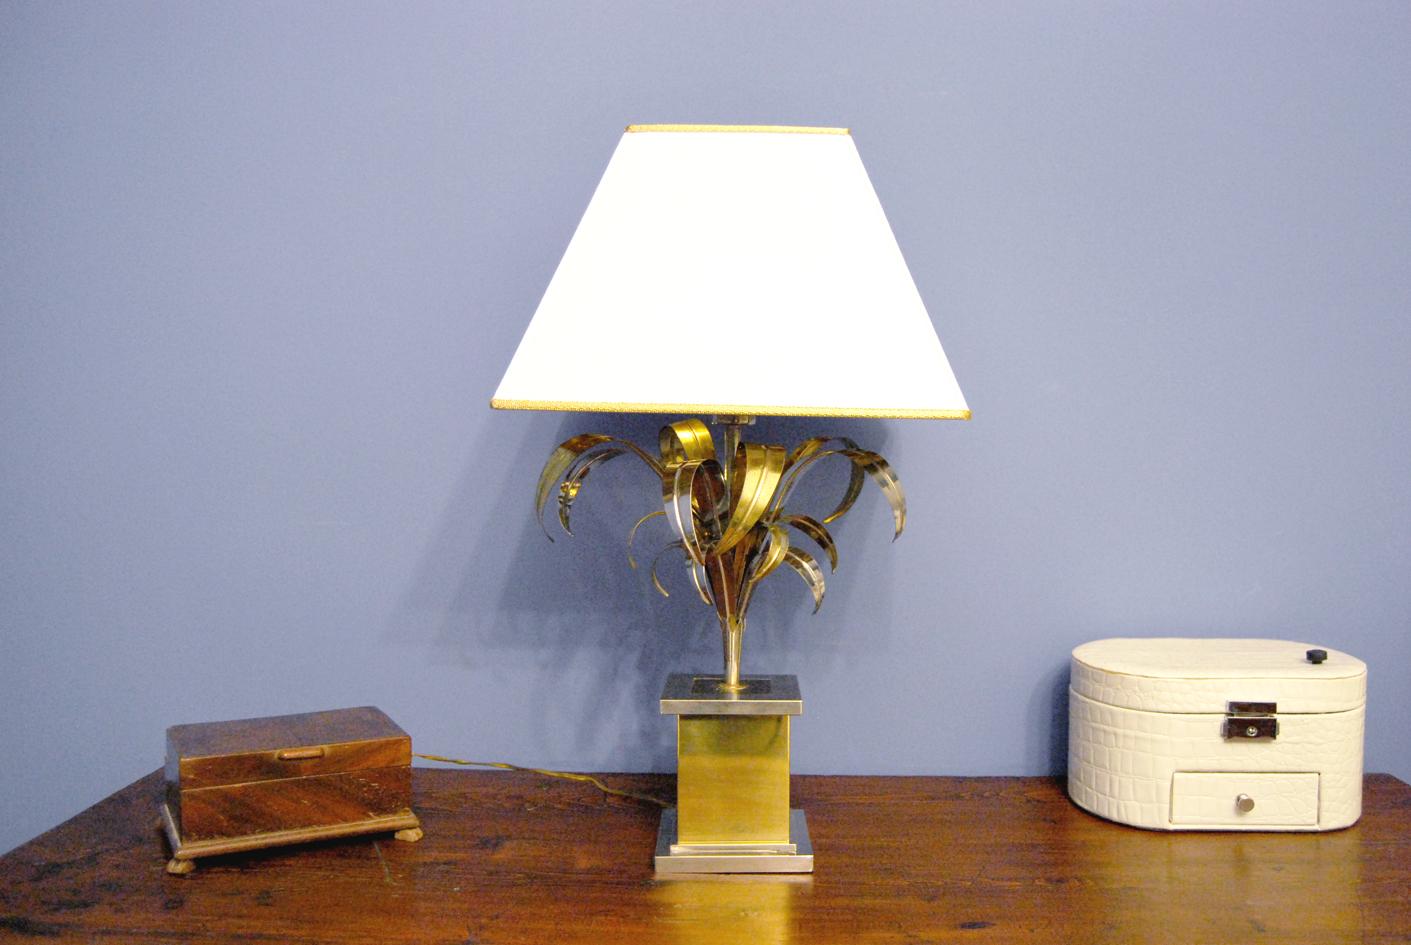 Fabelhafte moderne antike Tischlampe, die Willy Rizzo zugeschrieben wird.
Die Leuchte aus dem Jahr 1960 besteht aus einem quaderförmigen Sockel, aus dem sich ein Stiel mit Blättern in verschiedenen Größen erhebt. 
Das Material besteht aus Messing